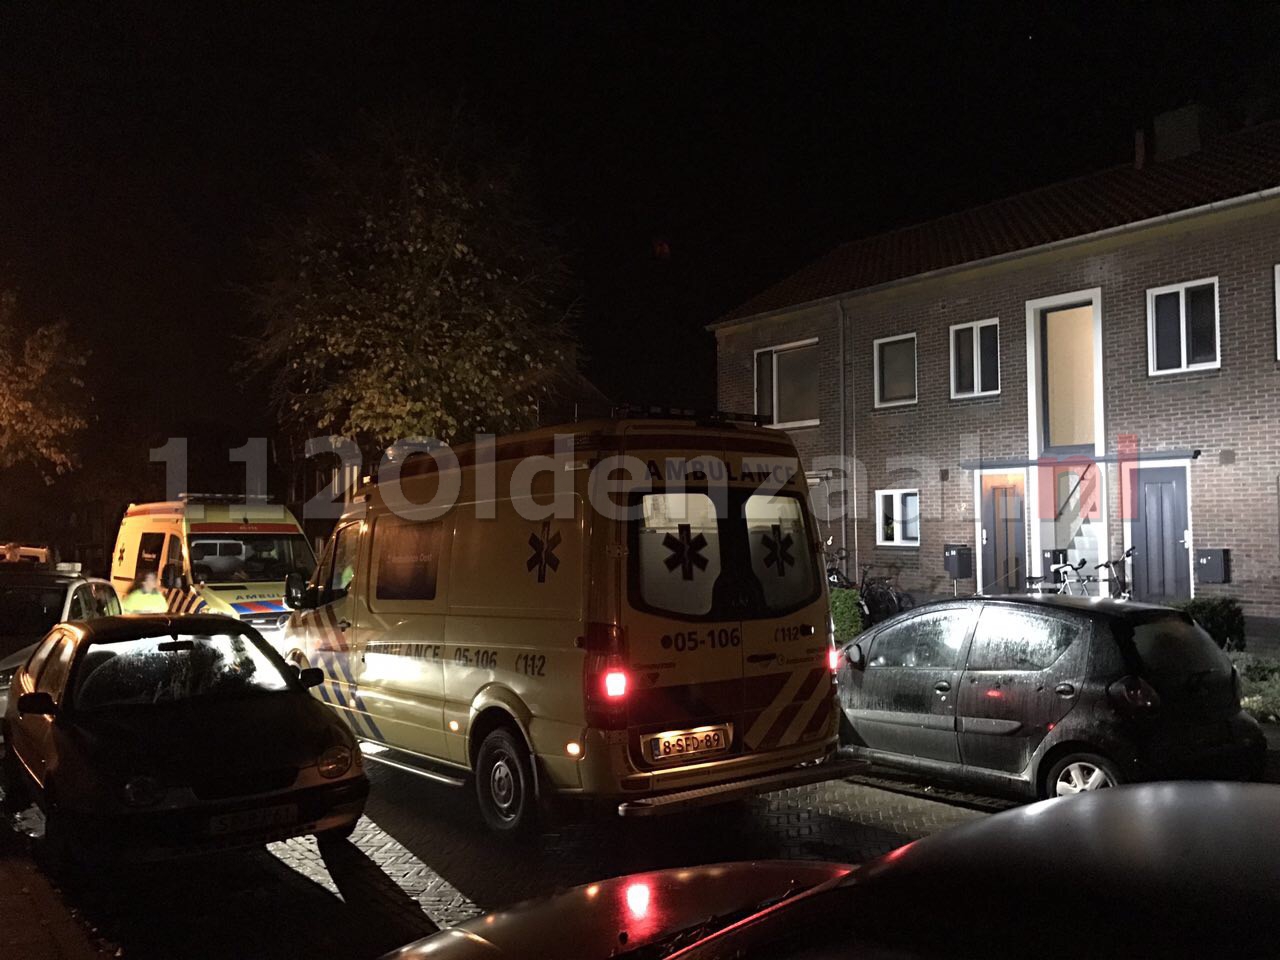 Video: Twee personen met spoed naar ziekenhuis na incident in woning Oldenzaal